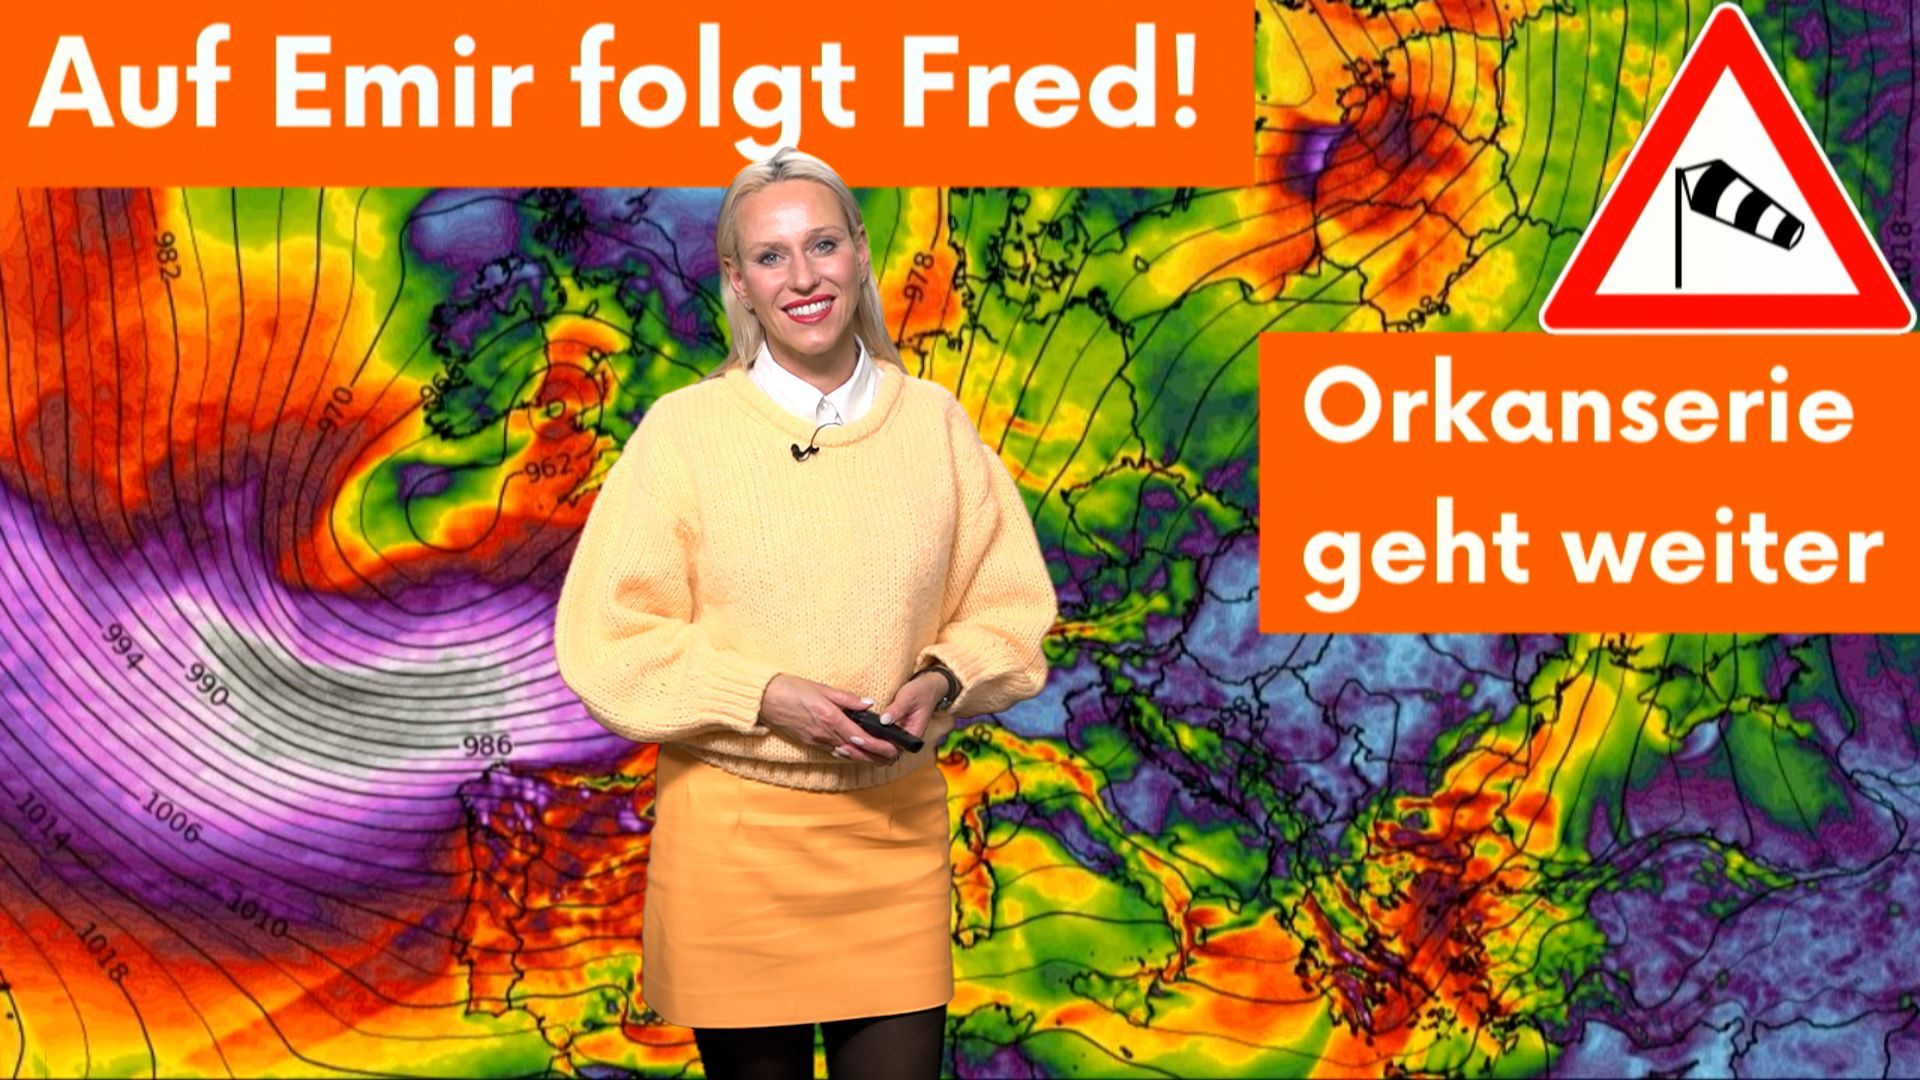 Rush-Hour in der Tiefdruckrinne! Aktueller Sturm-Fahrplan: Orkantief Fred folgt den Spuren Emirs!